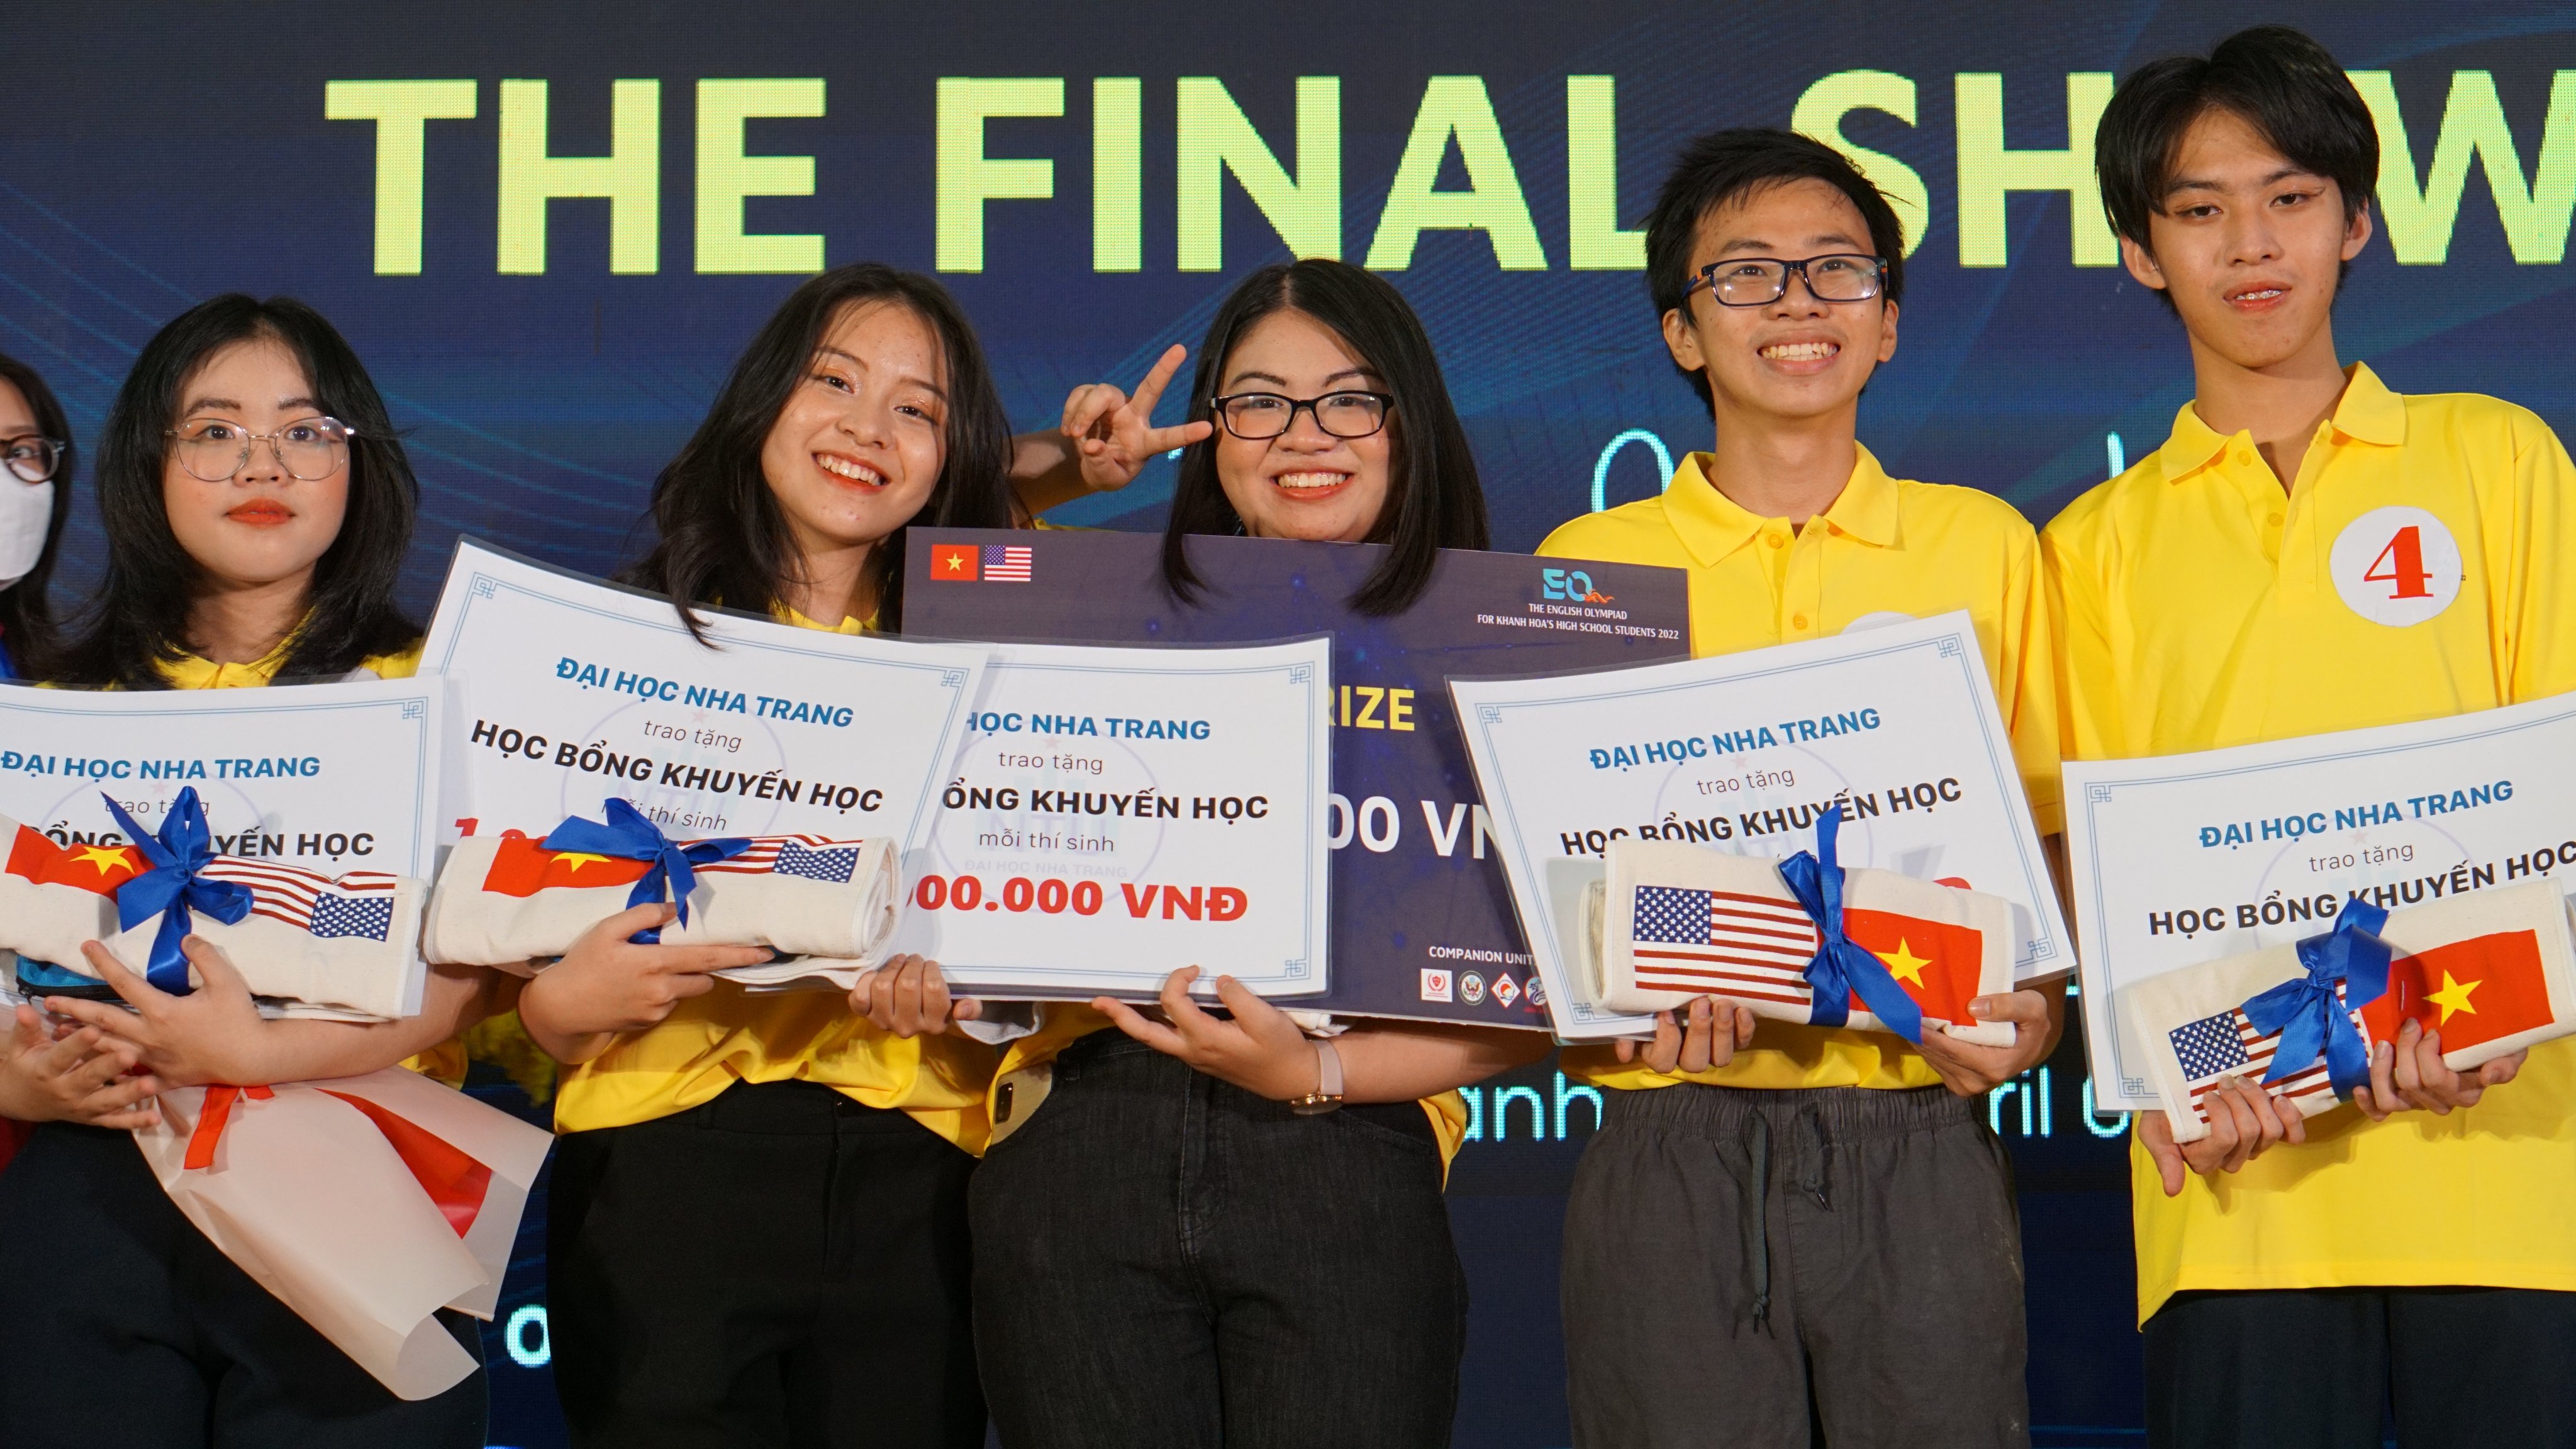 Trường THPT chuyên Lê Quý Đôn xuất sắc đạt giải nhất cuộc thi